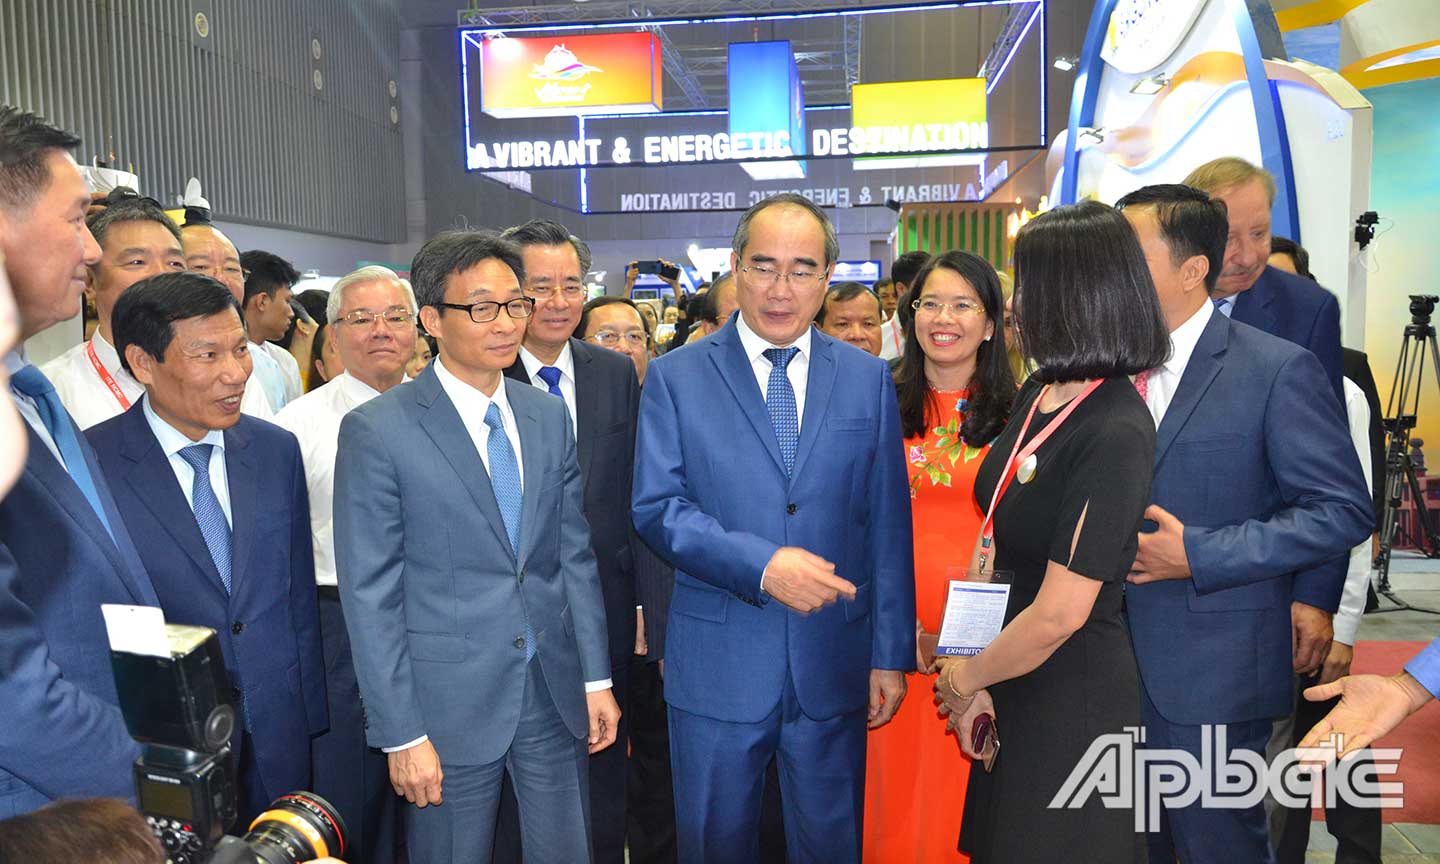 Phó Thủ tướng Chính phủ Vũ Đức Đam cùng đồng chí Nguyễn Thiện Nhân thăm các doanh nghiệp tại Hội chợ Du lịch quốc tế TP. Hồ Chí Minh 2019.